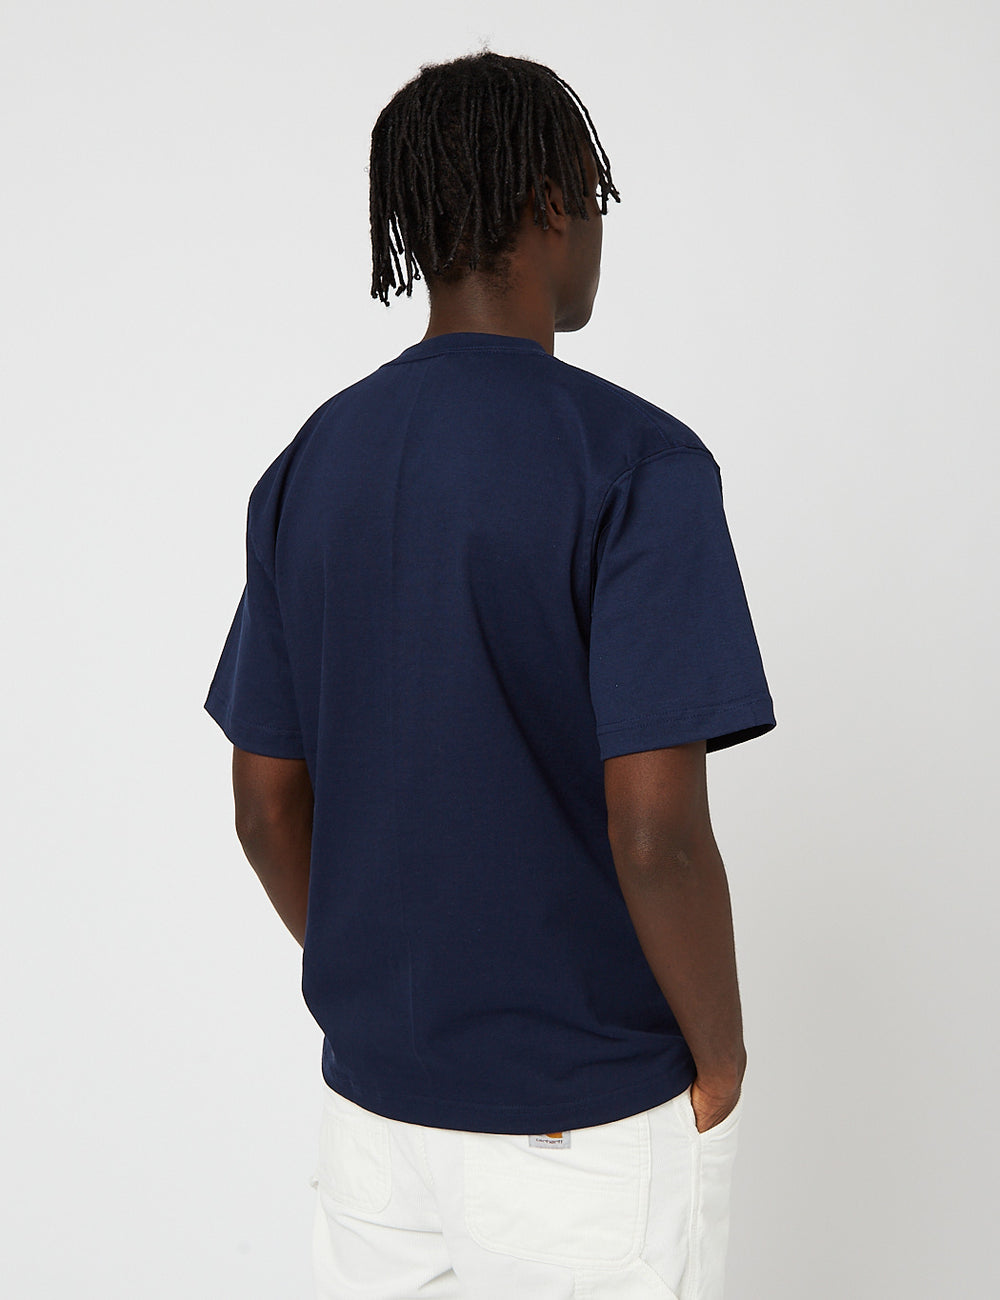 Camber USA 302 Pocket T-Shirt (8oz URBAN Cotton) Marineblau I - EXCESS